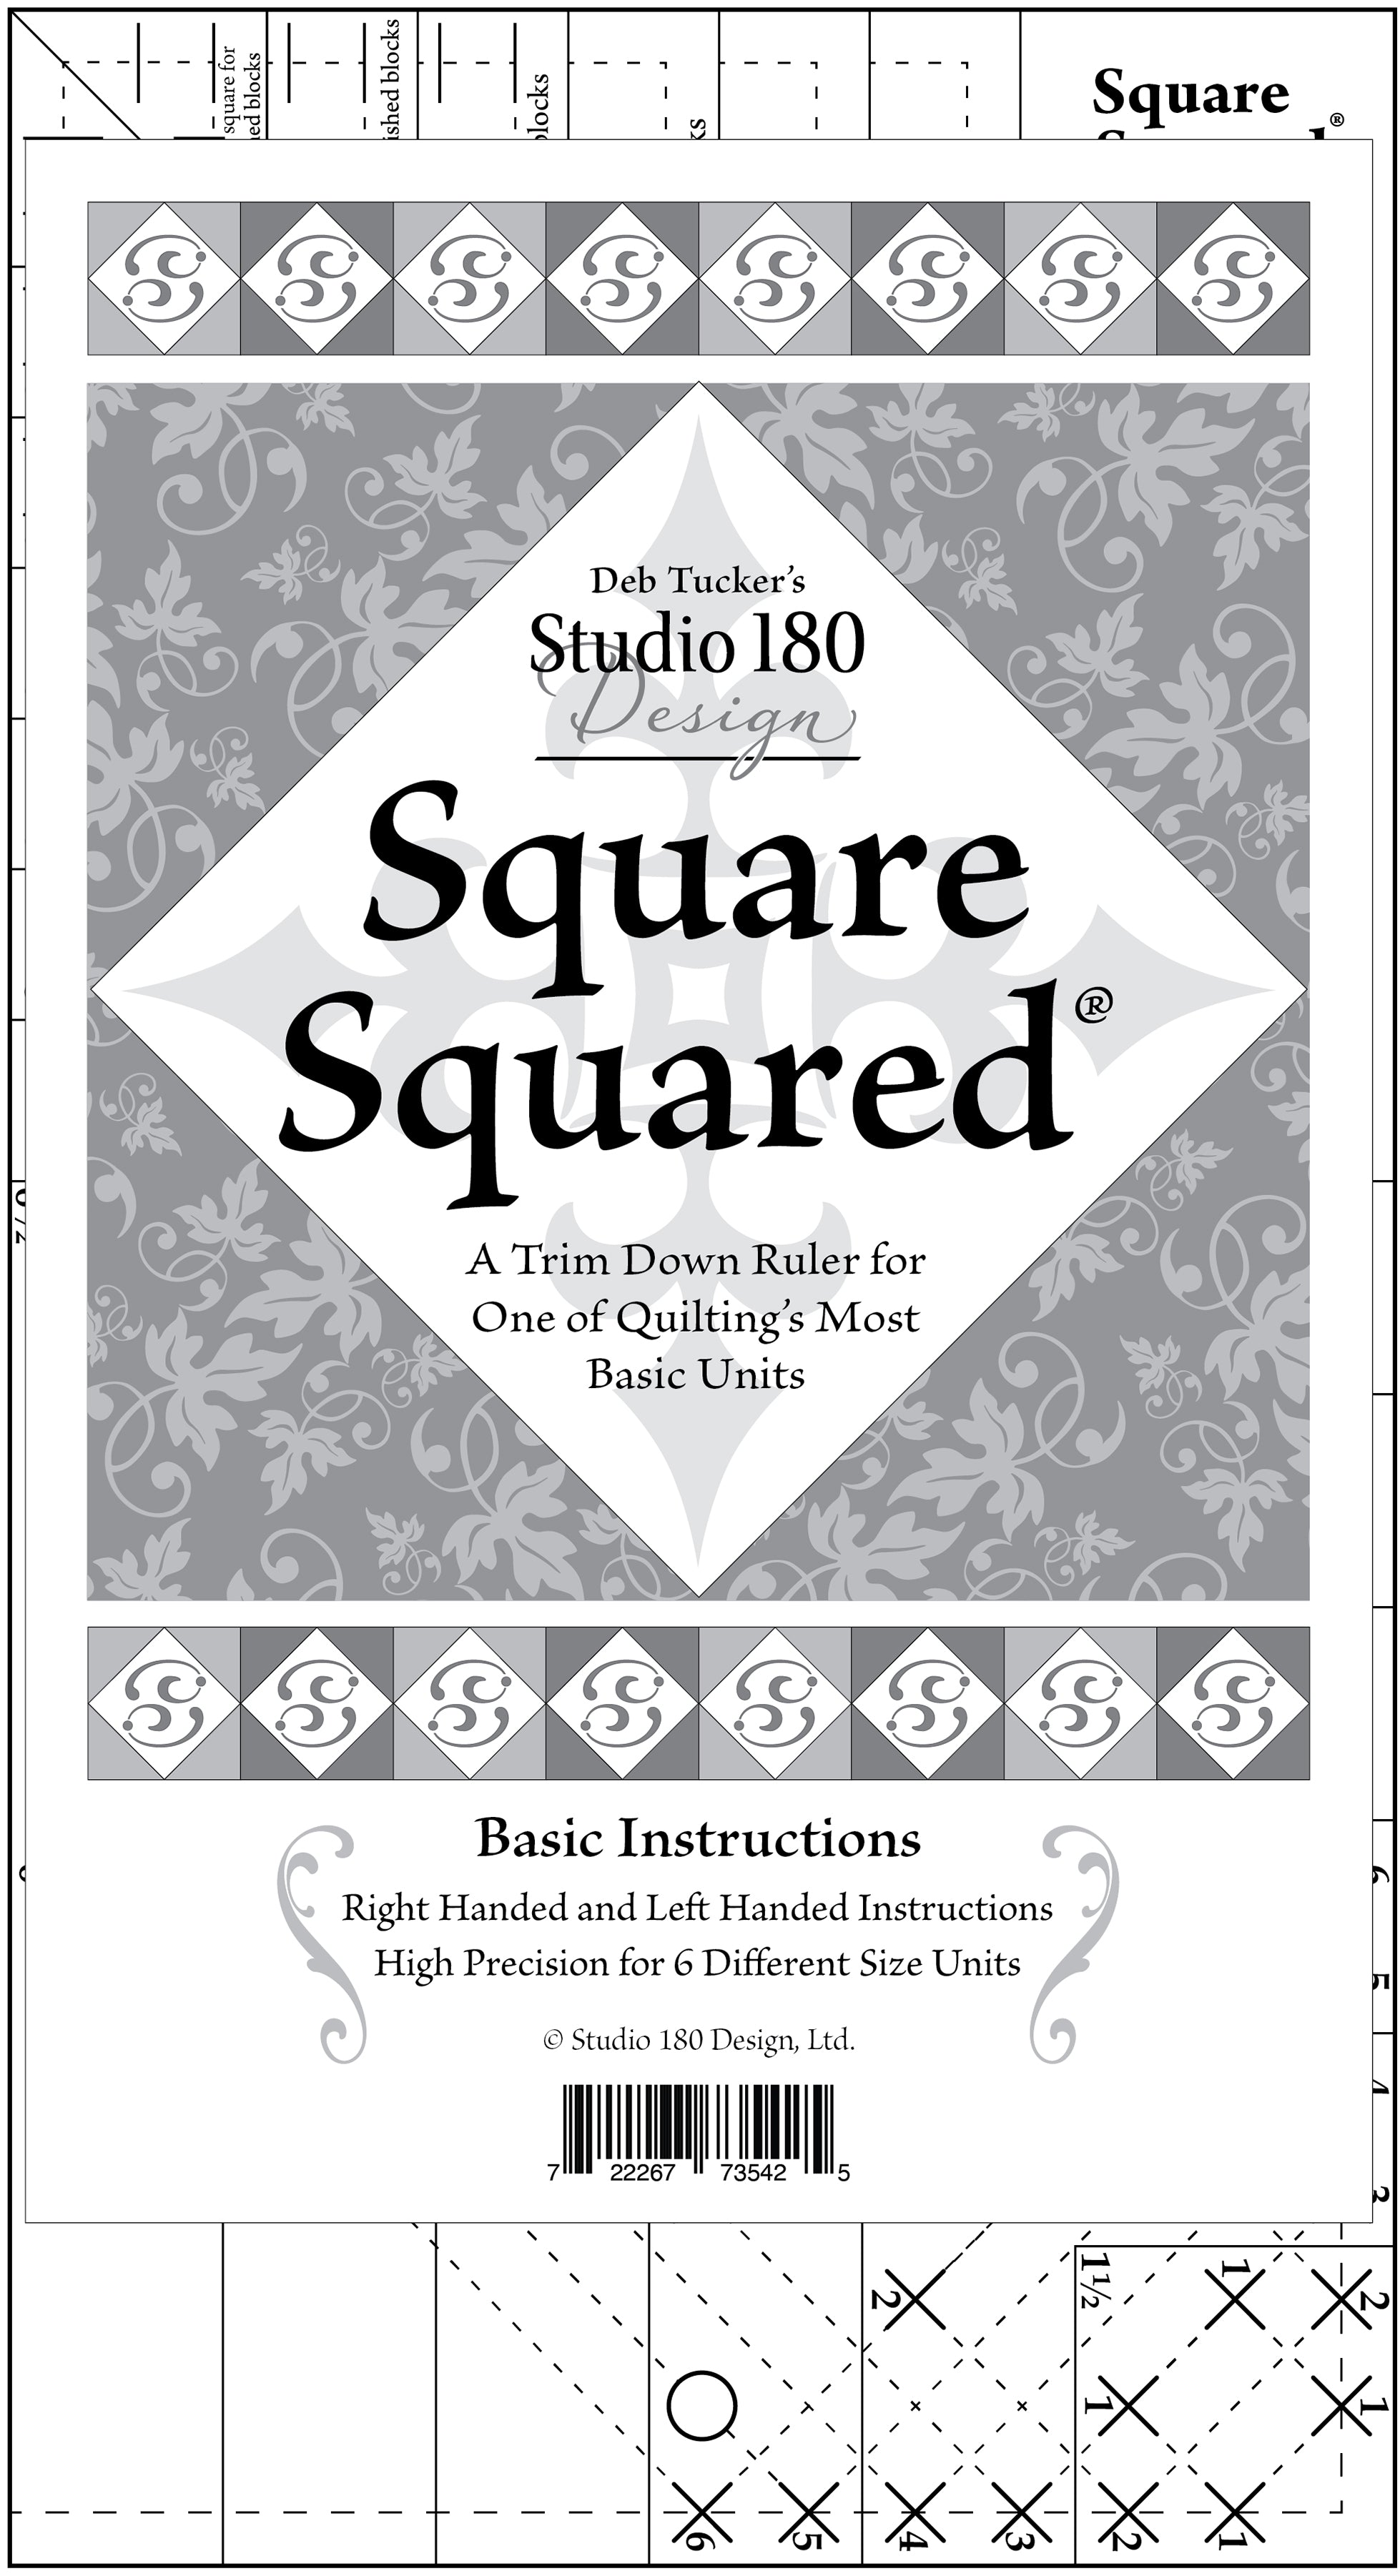 Square Squared - Deb Tucker's Studio 180 Design